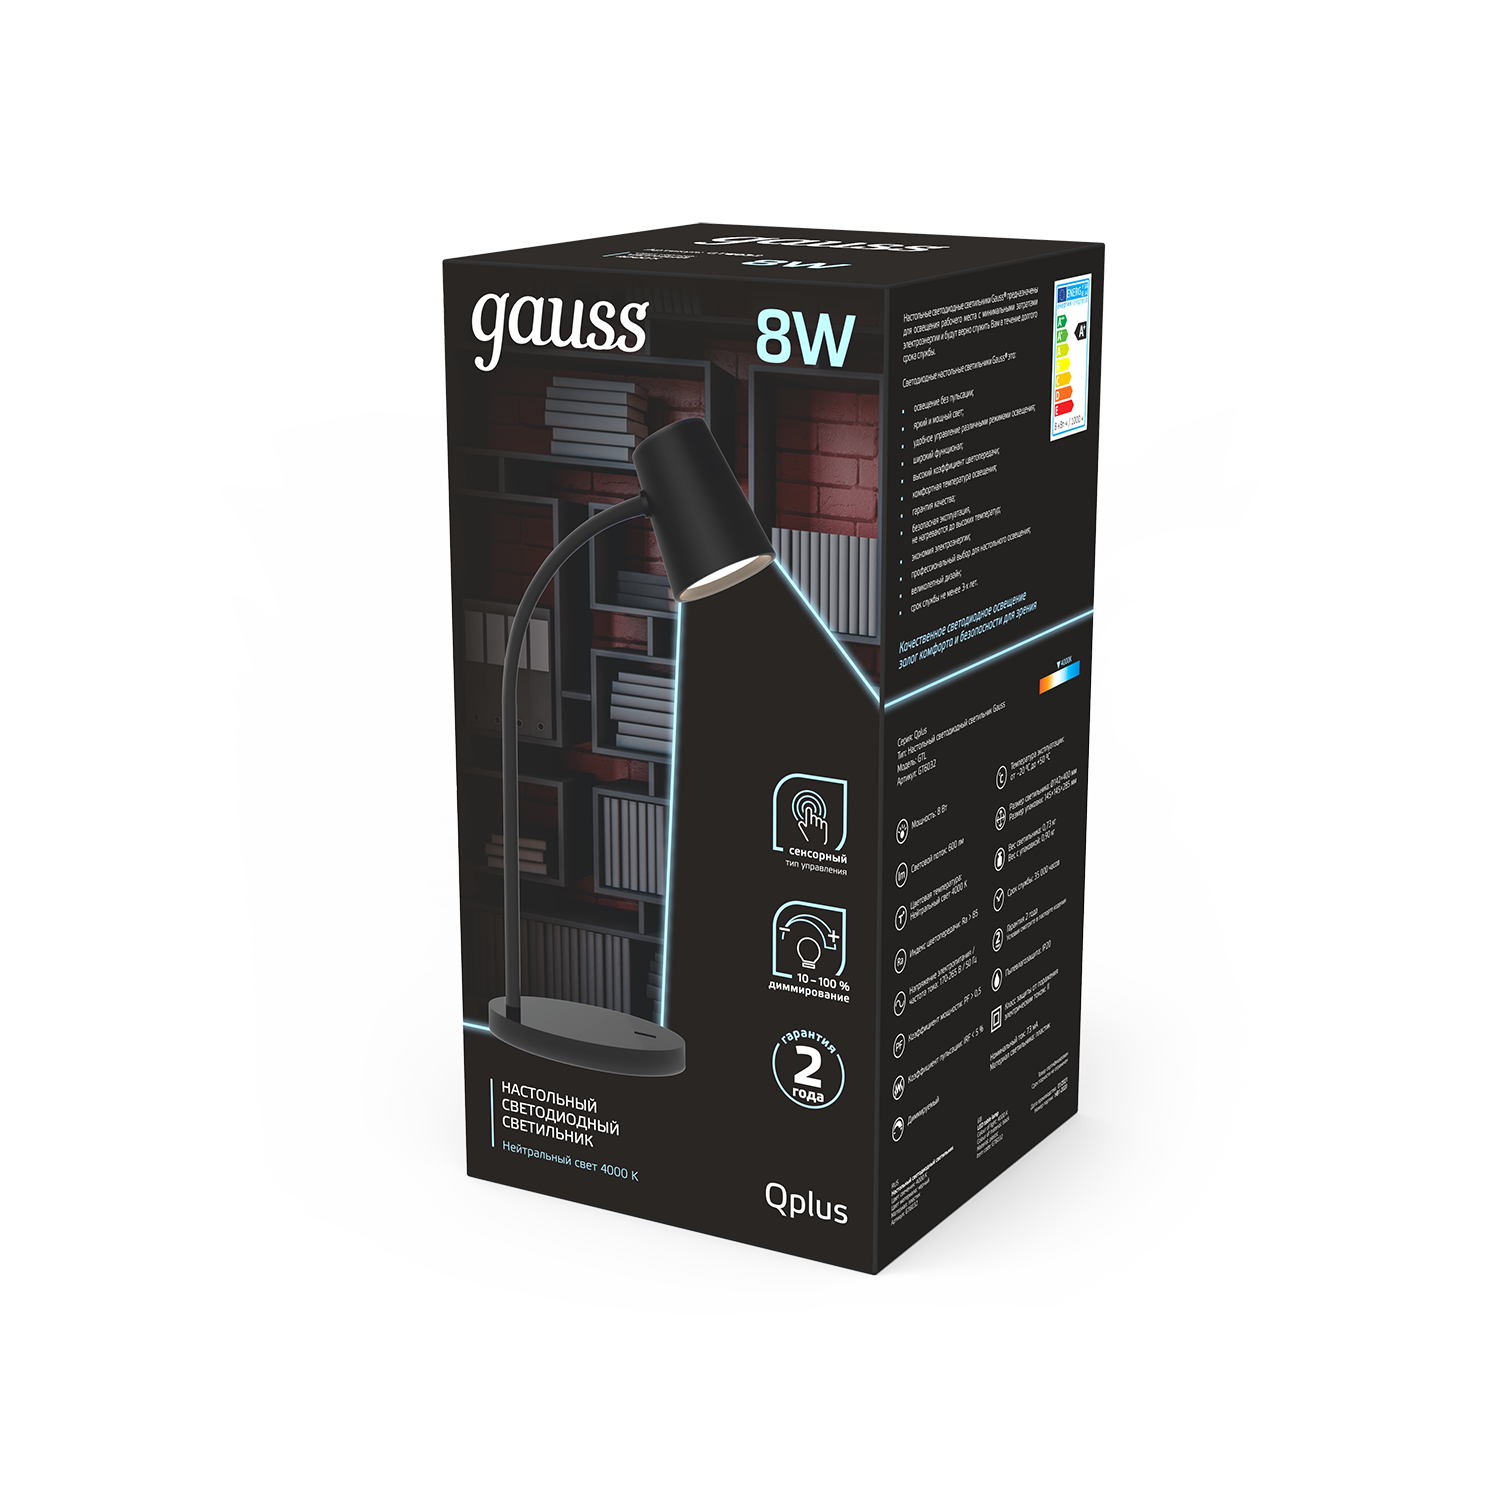 Gauss Светильник настольный Qplus модель GTL603 8W 600lm 4000K 170-265V черный диммируемый LED 1/8